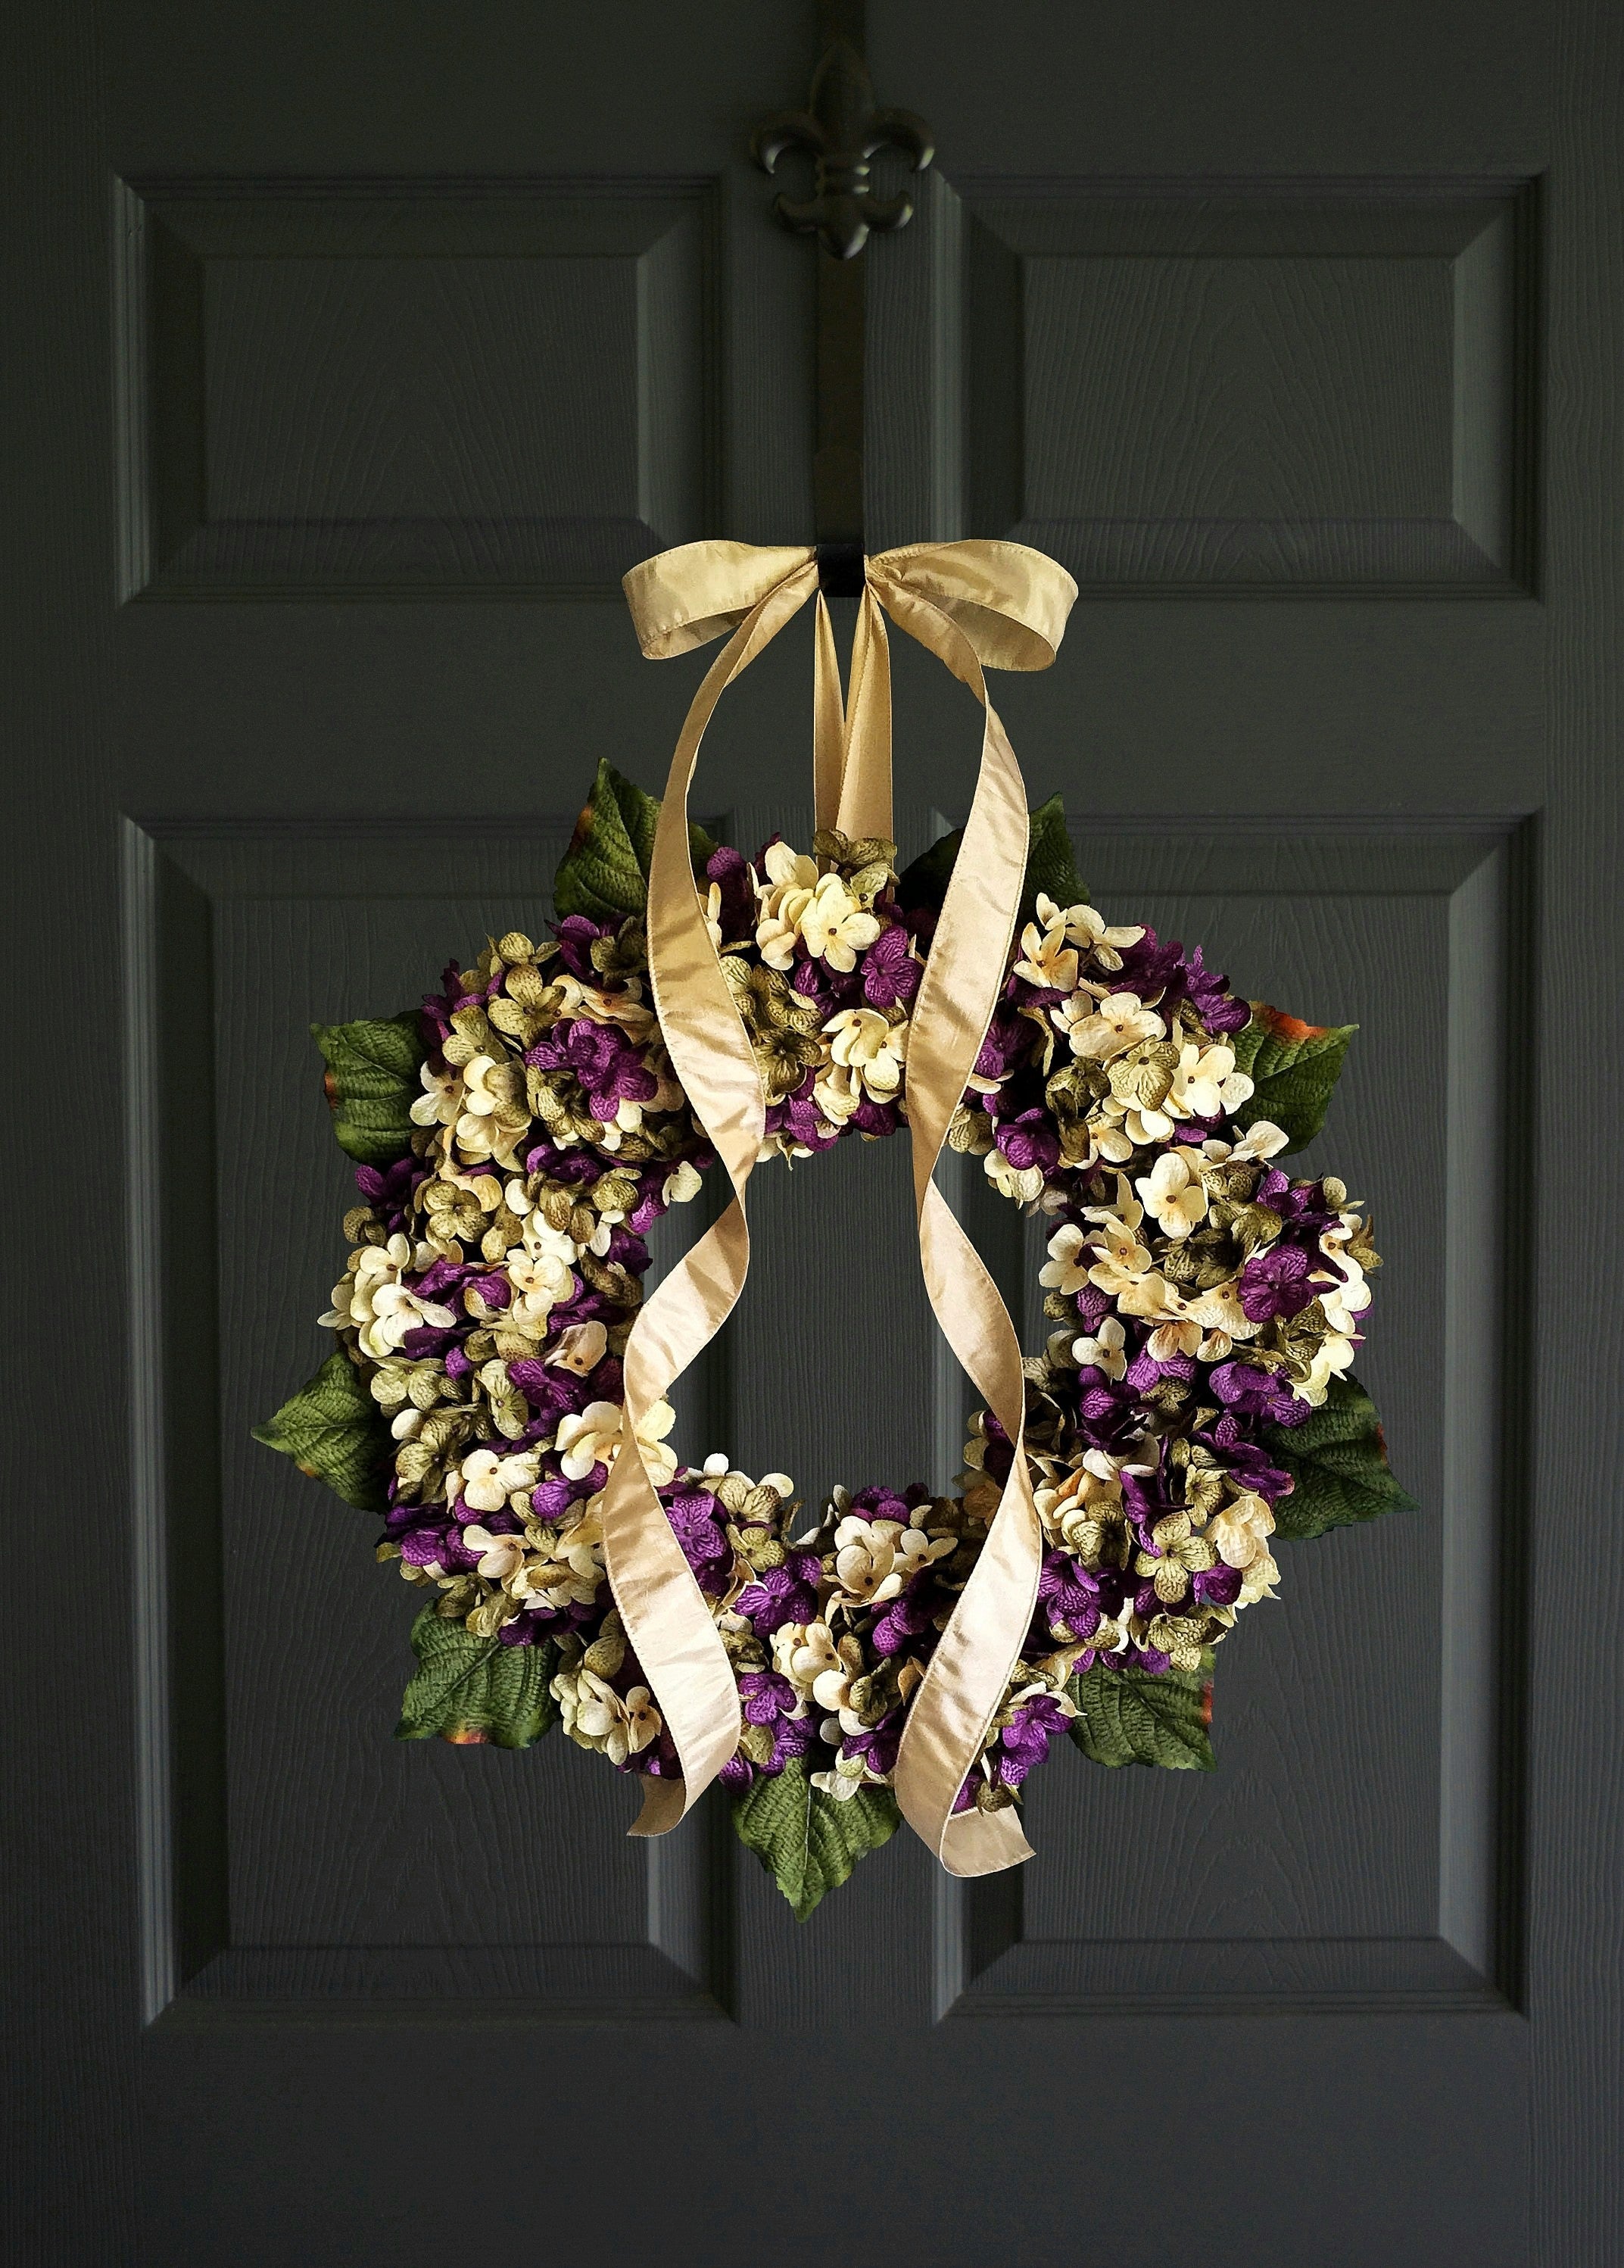 hydrangea door wreath made in purple green cream colors on dark door